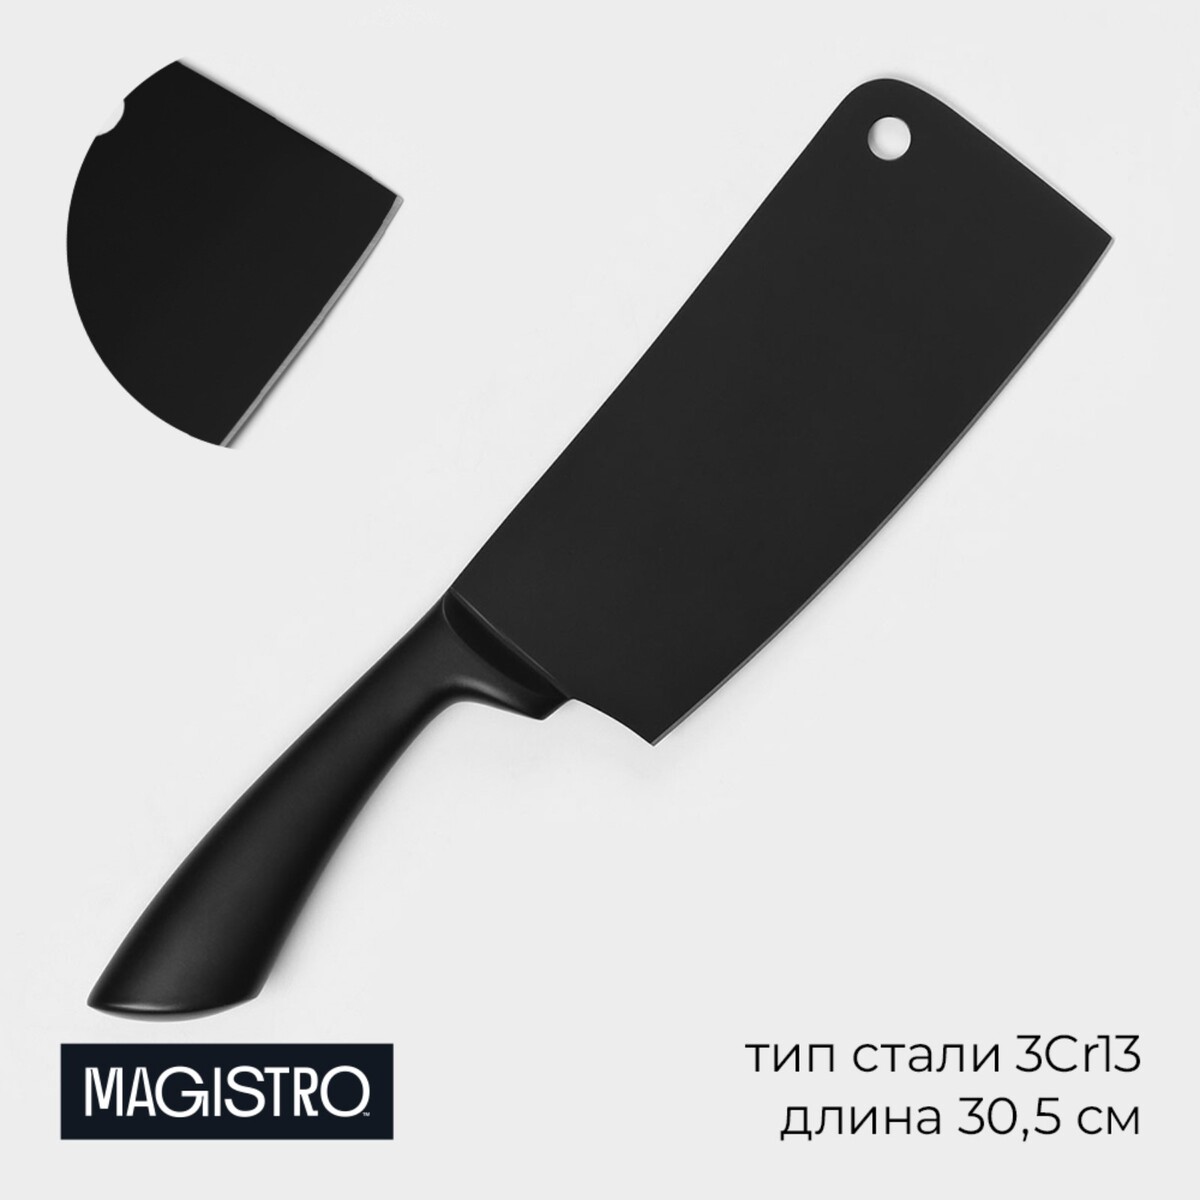 Нож сантоку кухонный magistro vantablack, длина лезвия 20,3 см, цвет черный